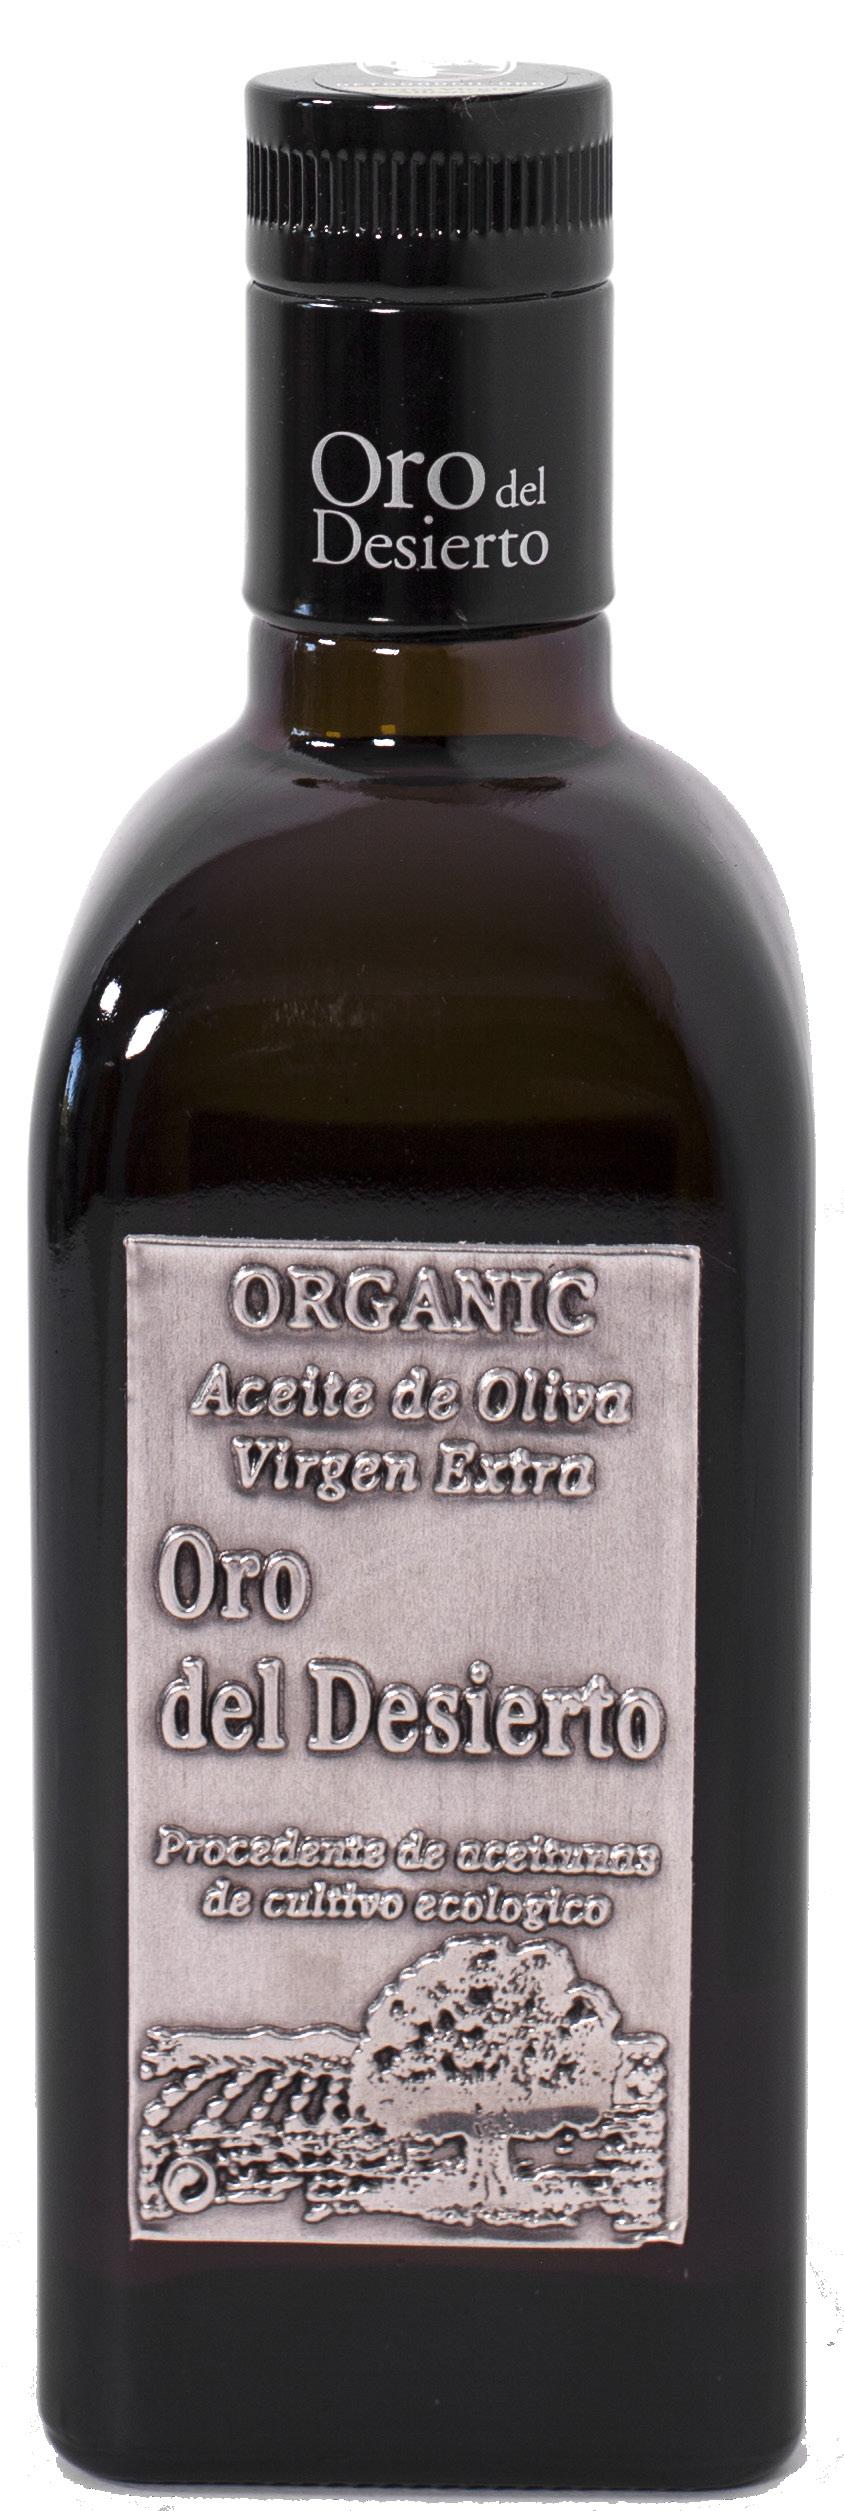 Oro del Desierto Pift din salat op - det spanske guld blandt olivenolierne - økologiske italienske specialiteter af